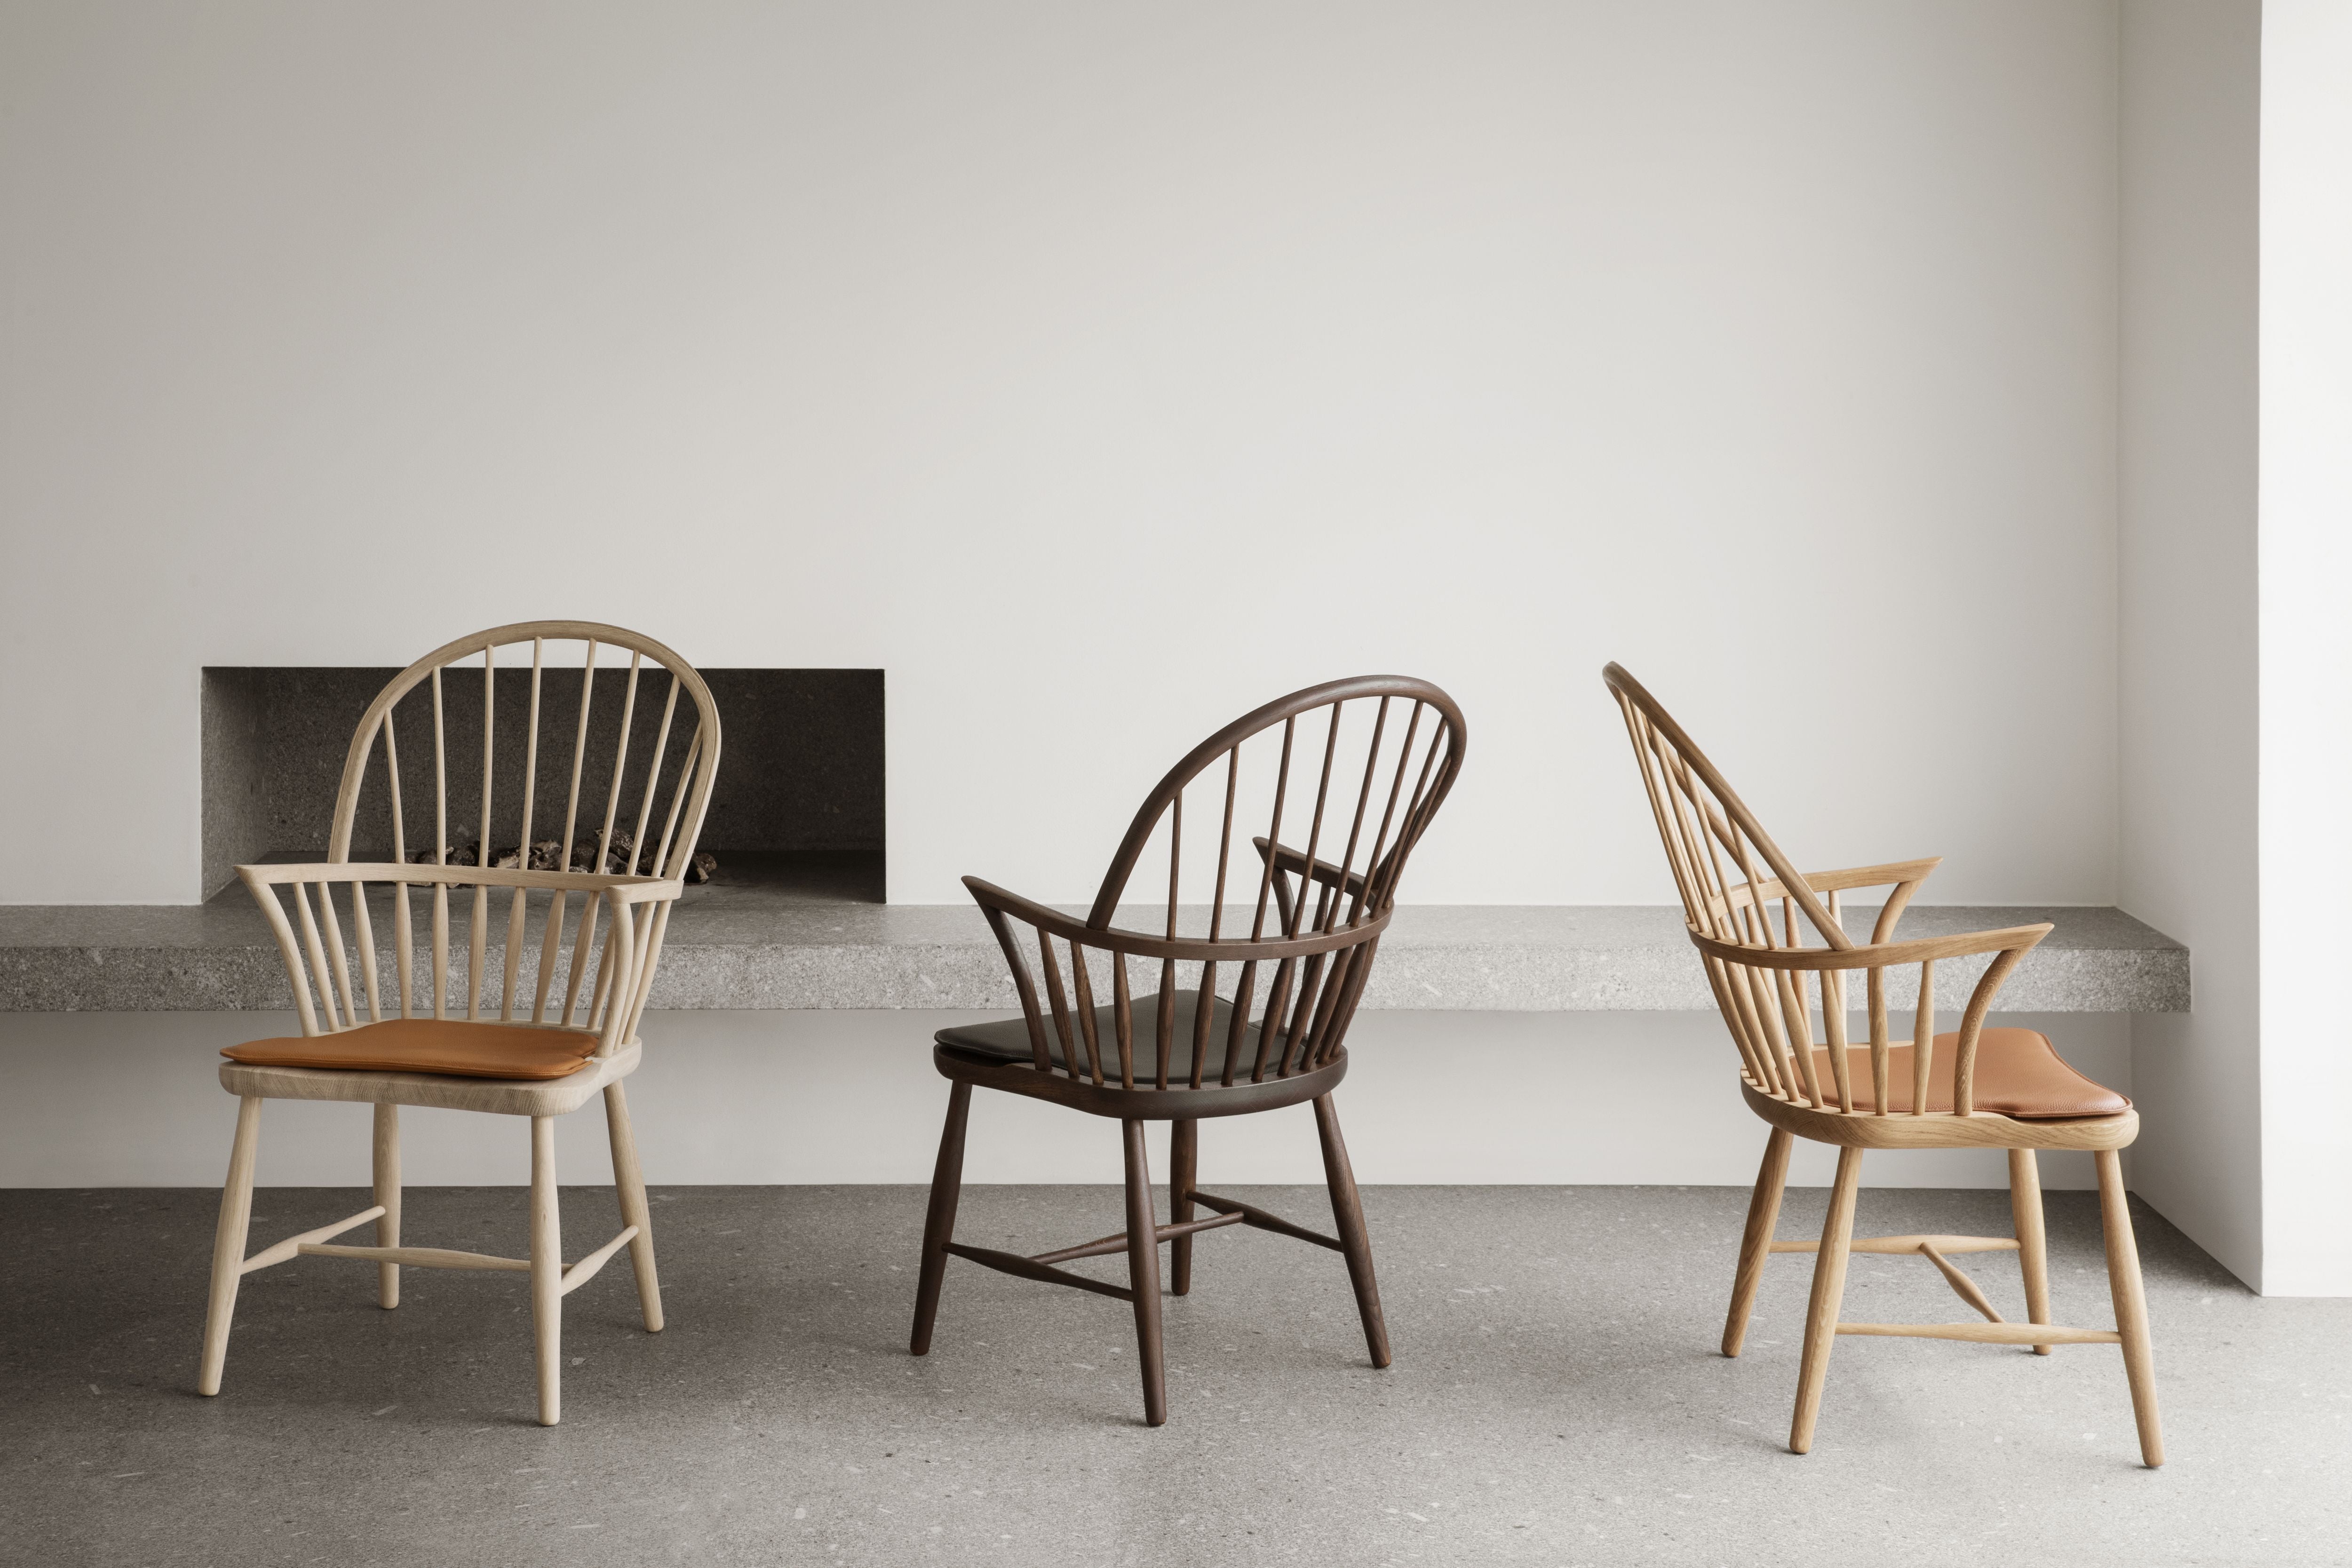 Carl Hansen Cushion For Windsor Chair, Leather Loke 7748